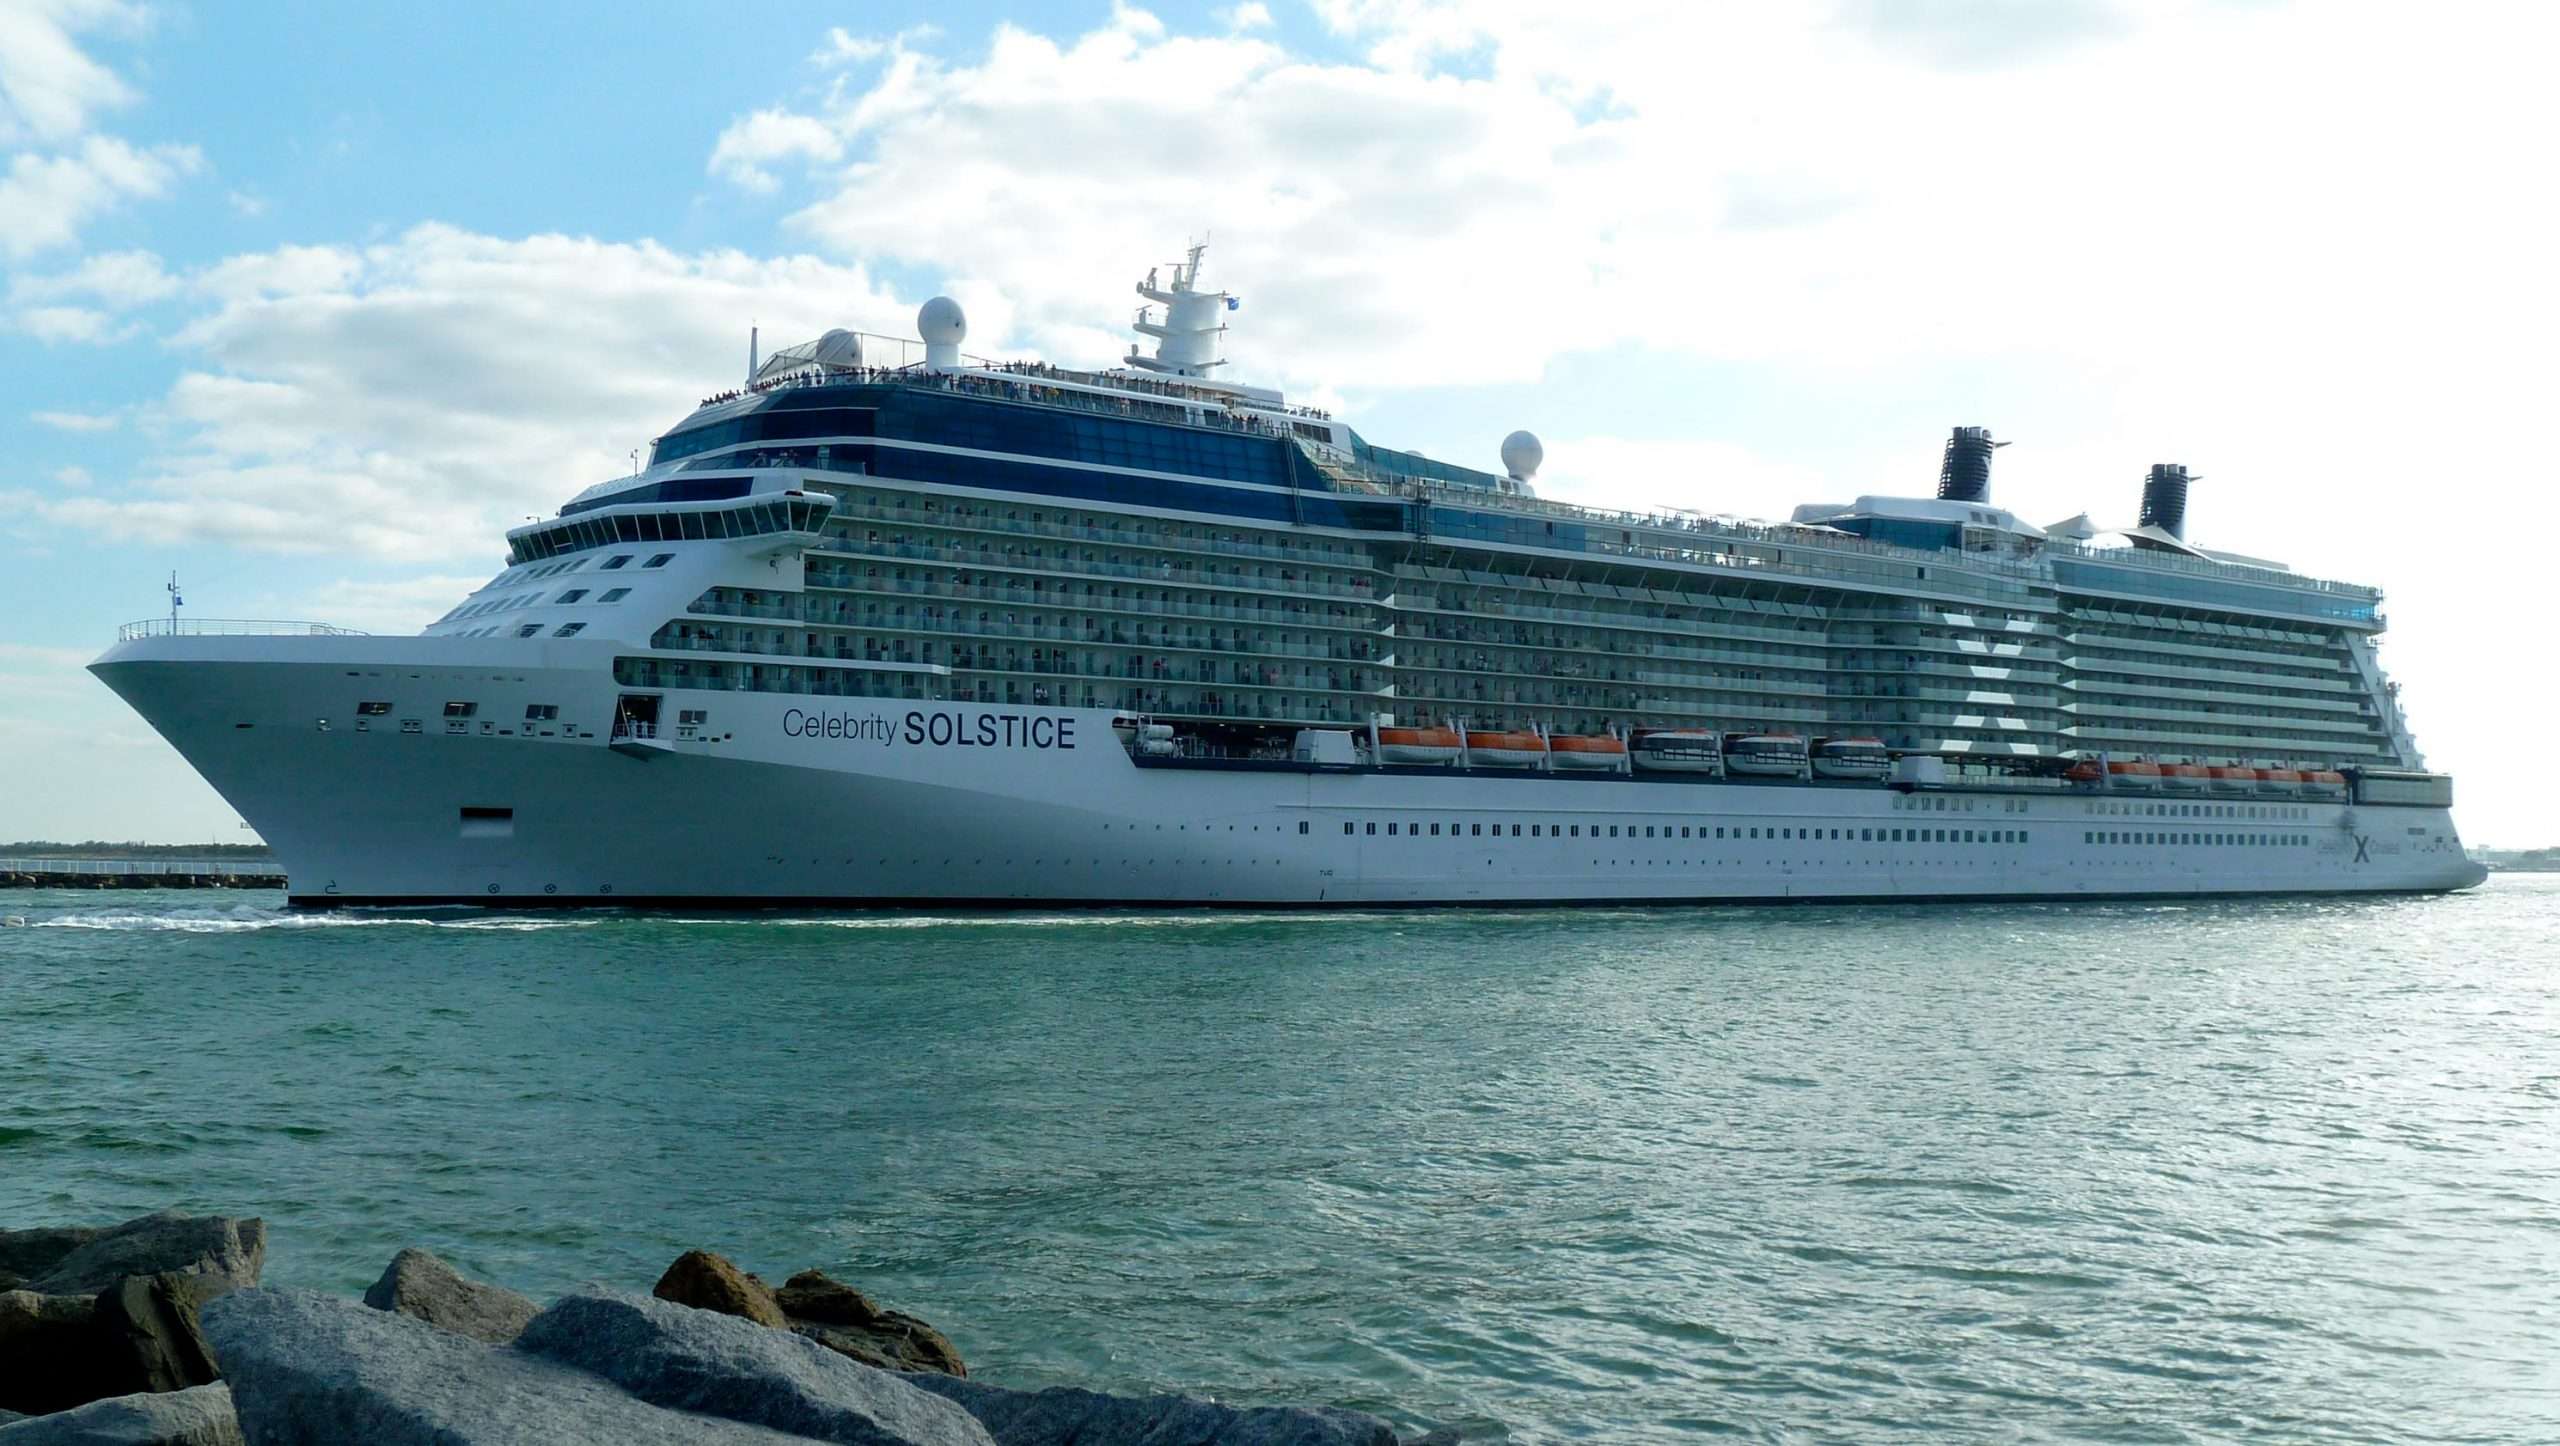 Cruise ship tours: Celebrity Cruises